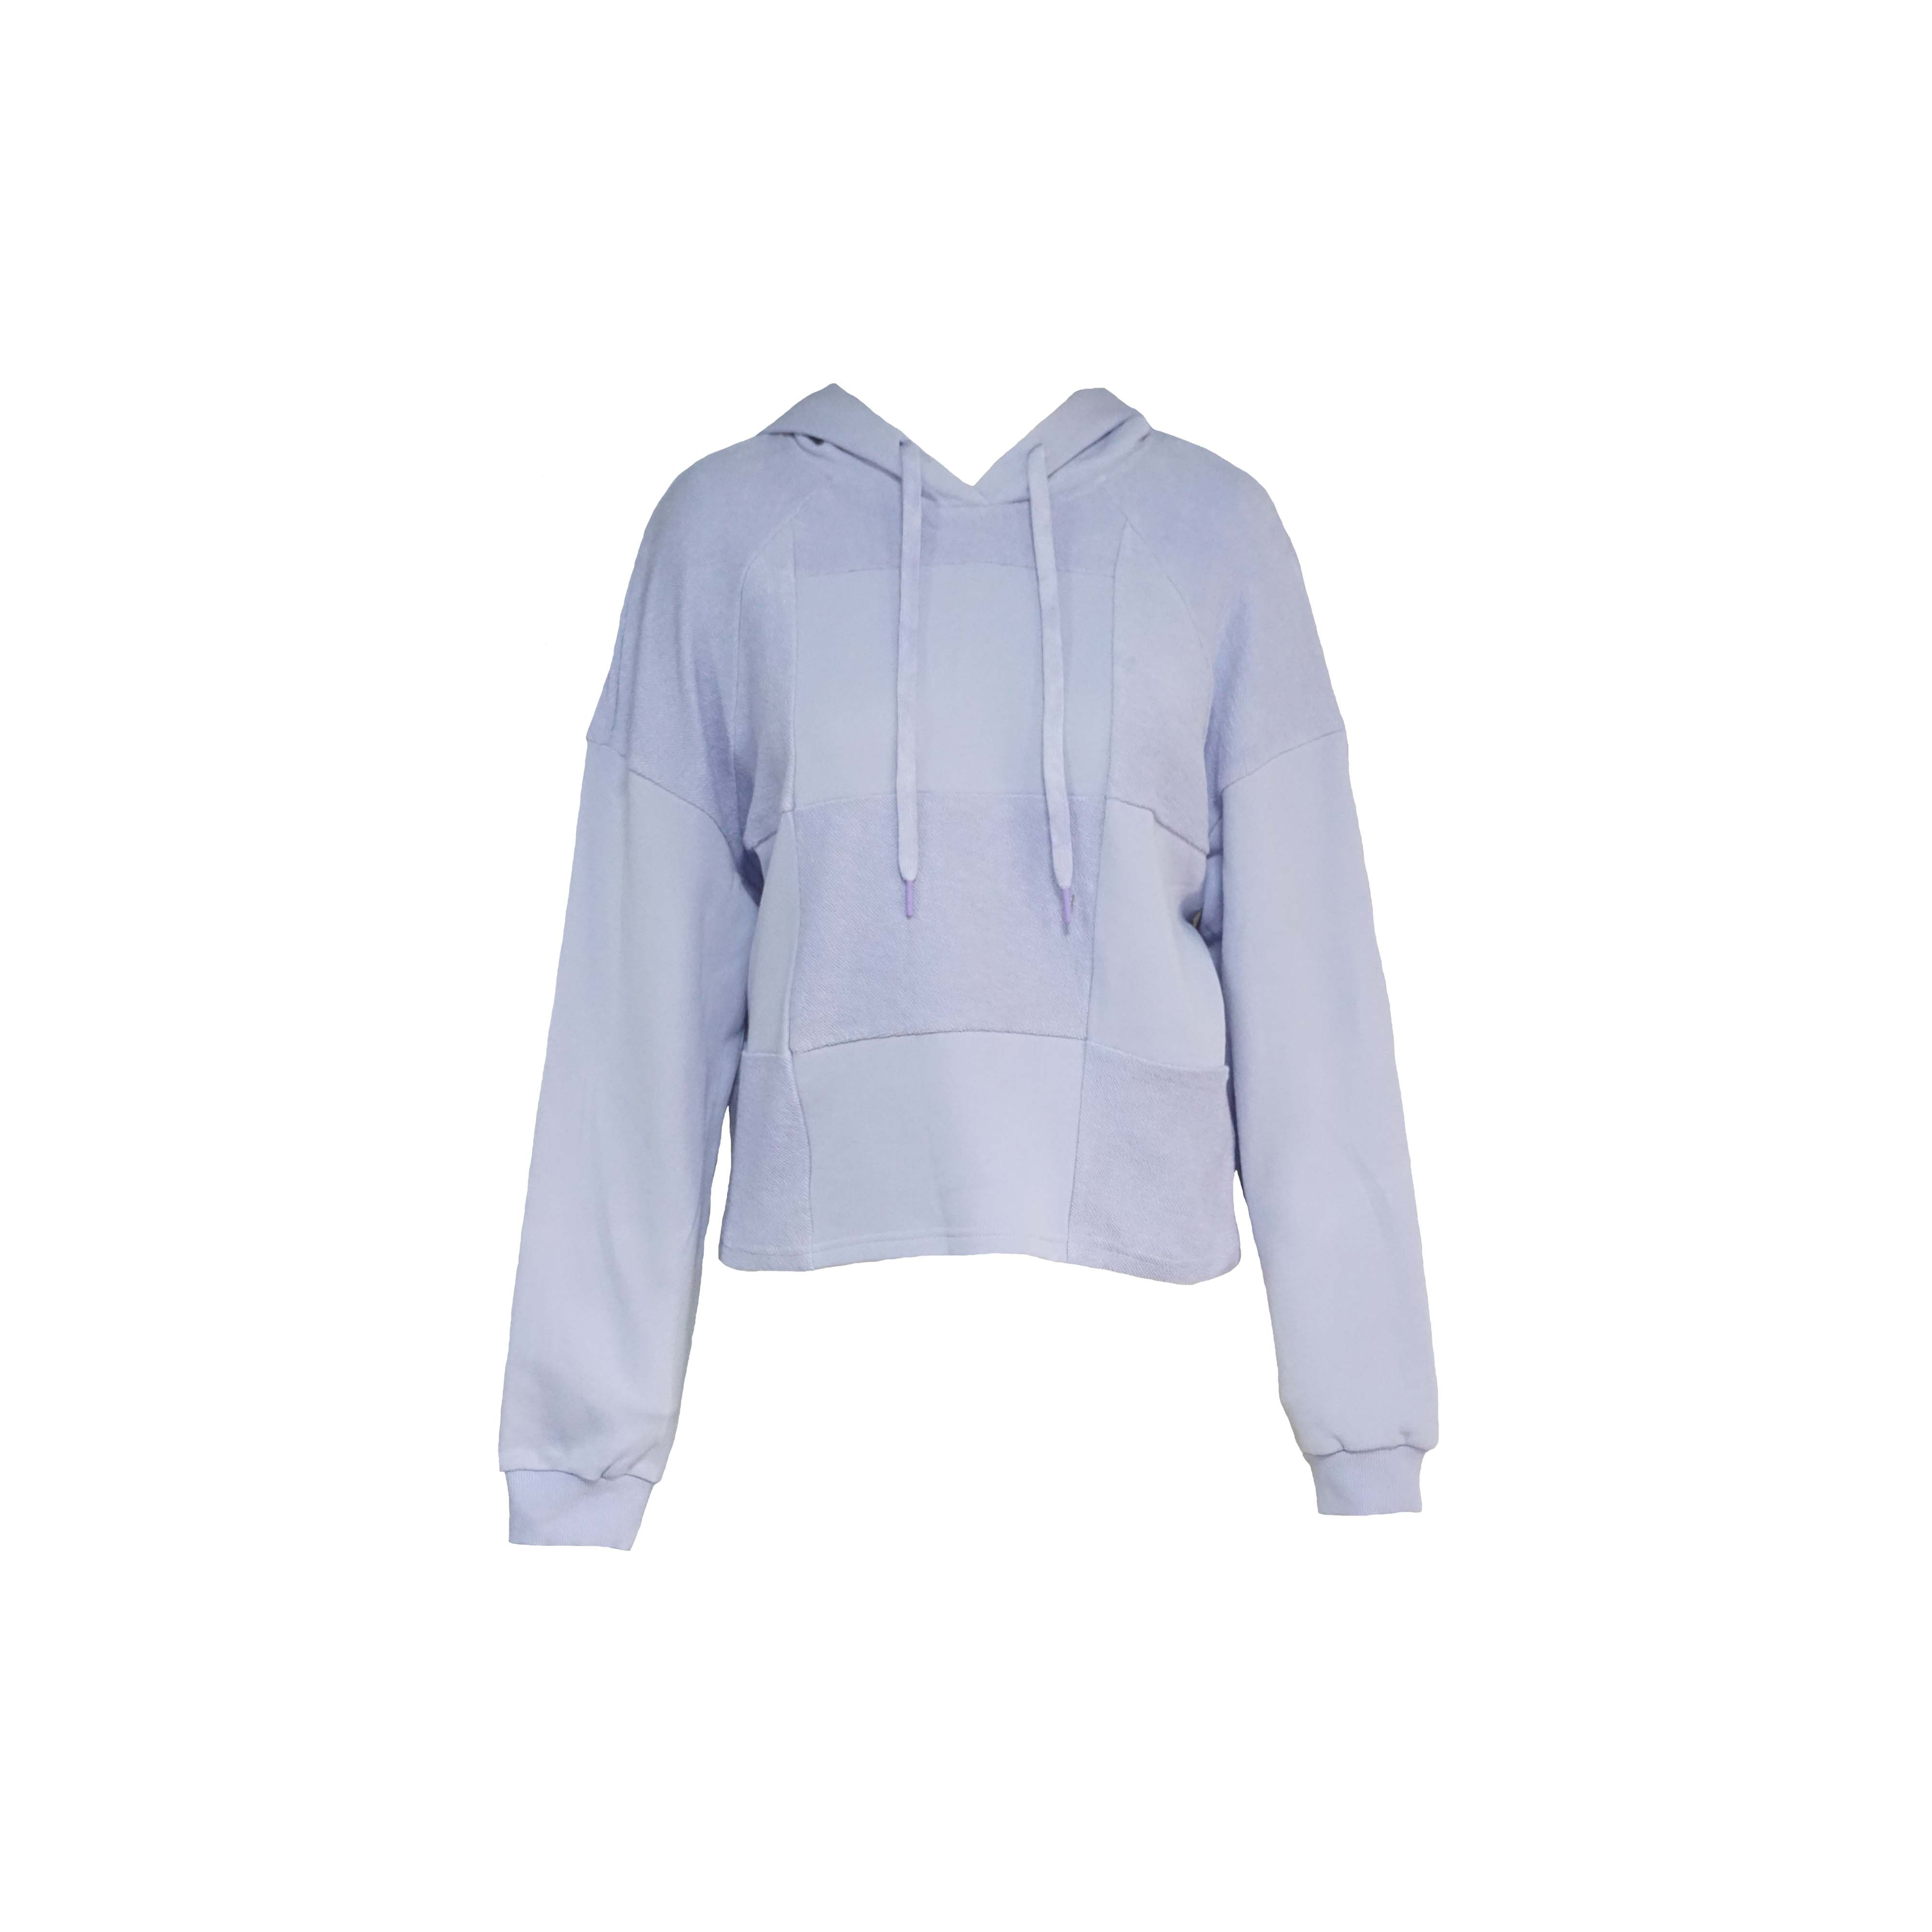 Lavender Hooded Sweatshirt